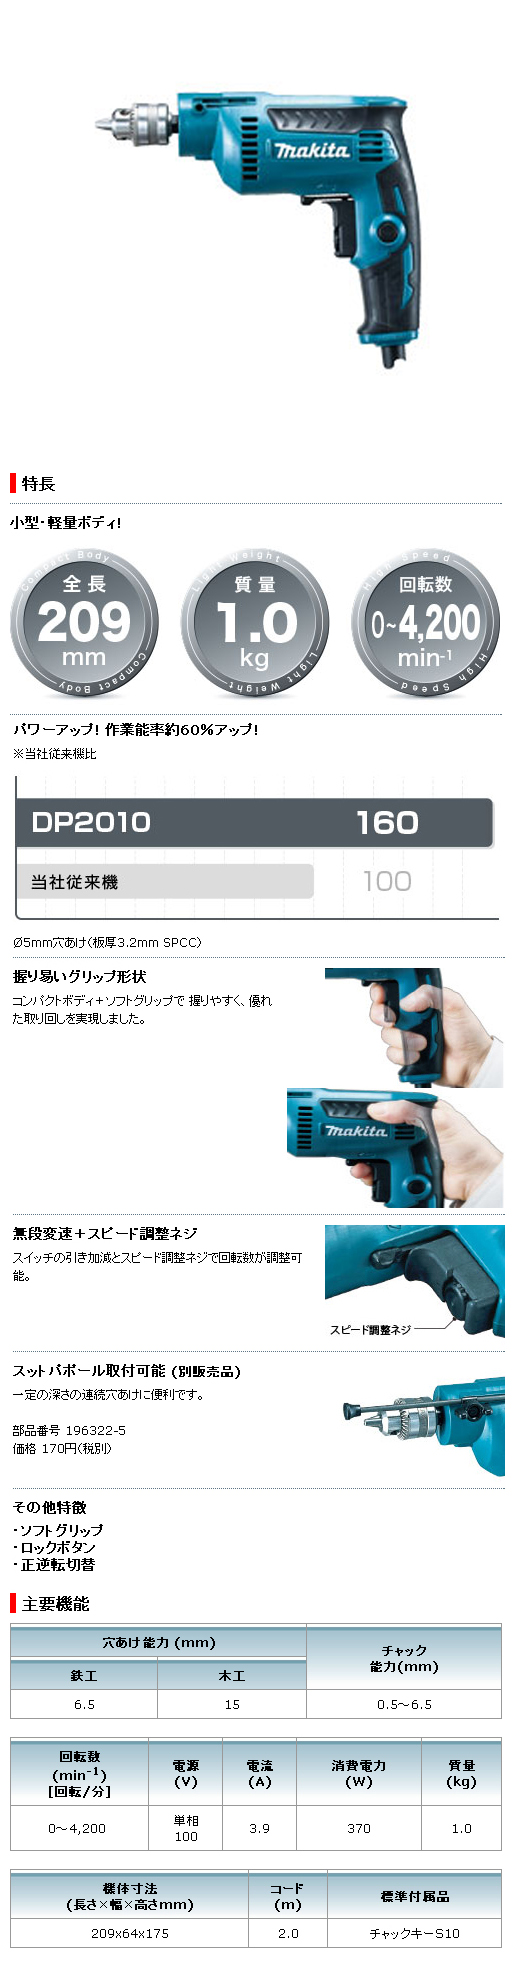 マキタ 6.5mm 高速ドリル DP2010